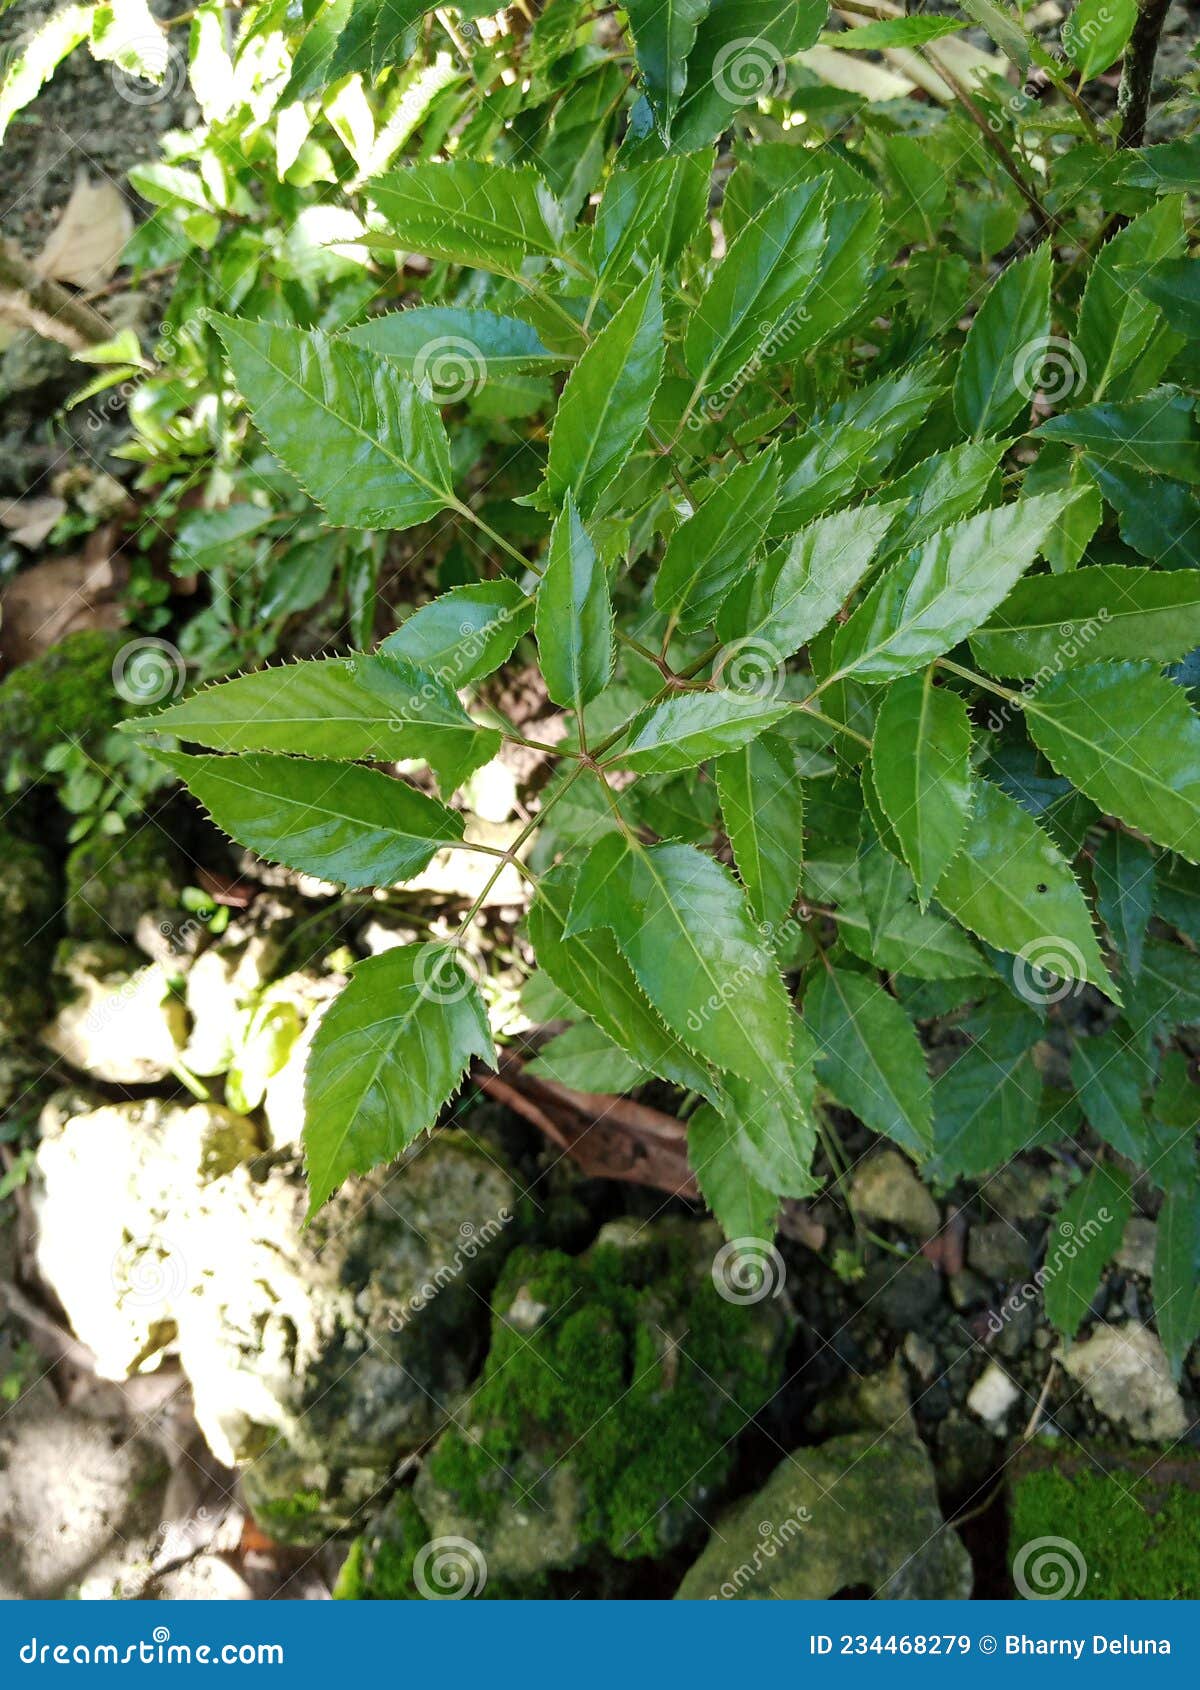 leaf of polyscias frukticosa